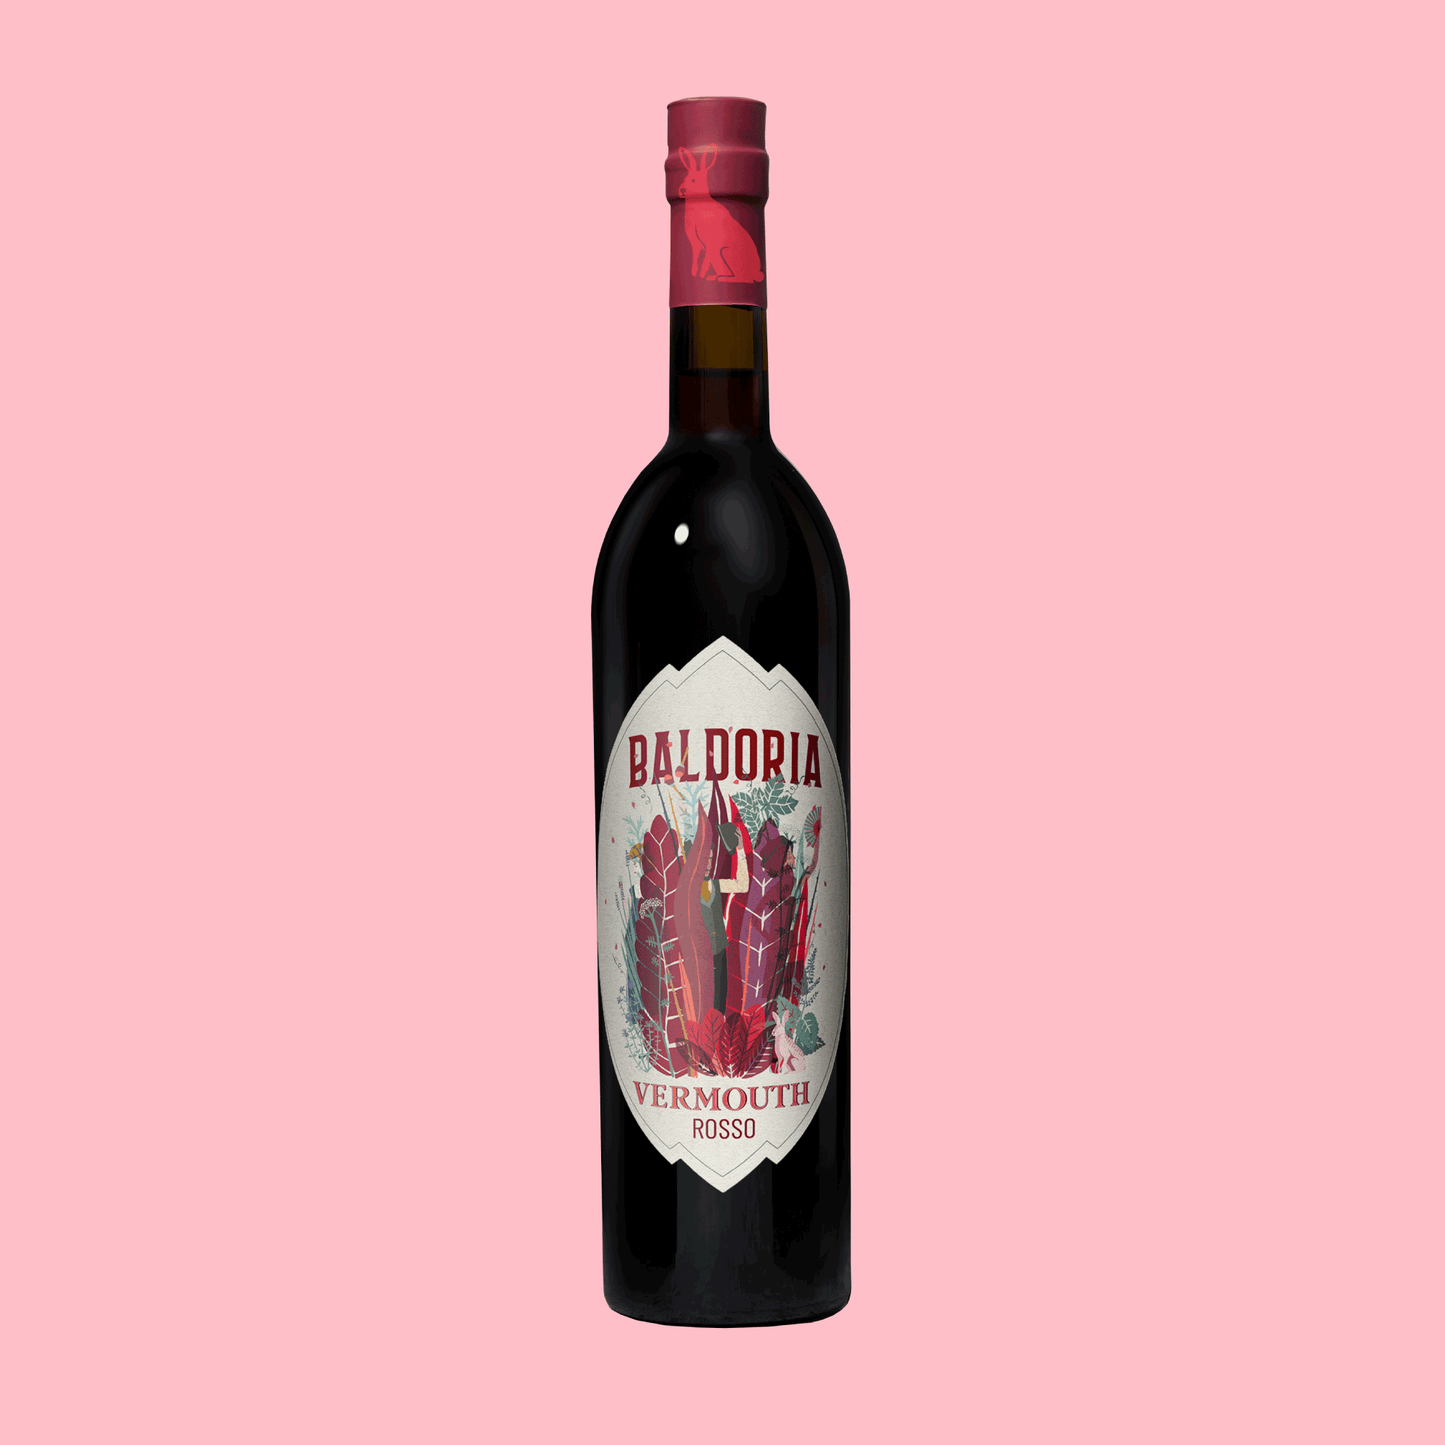 BALDORIA - Vermouth Rosso